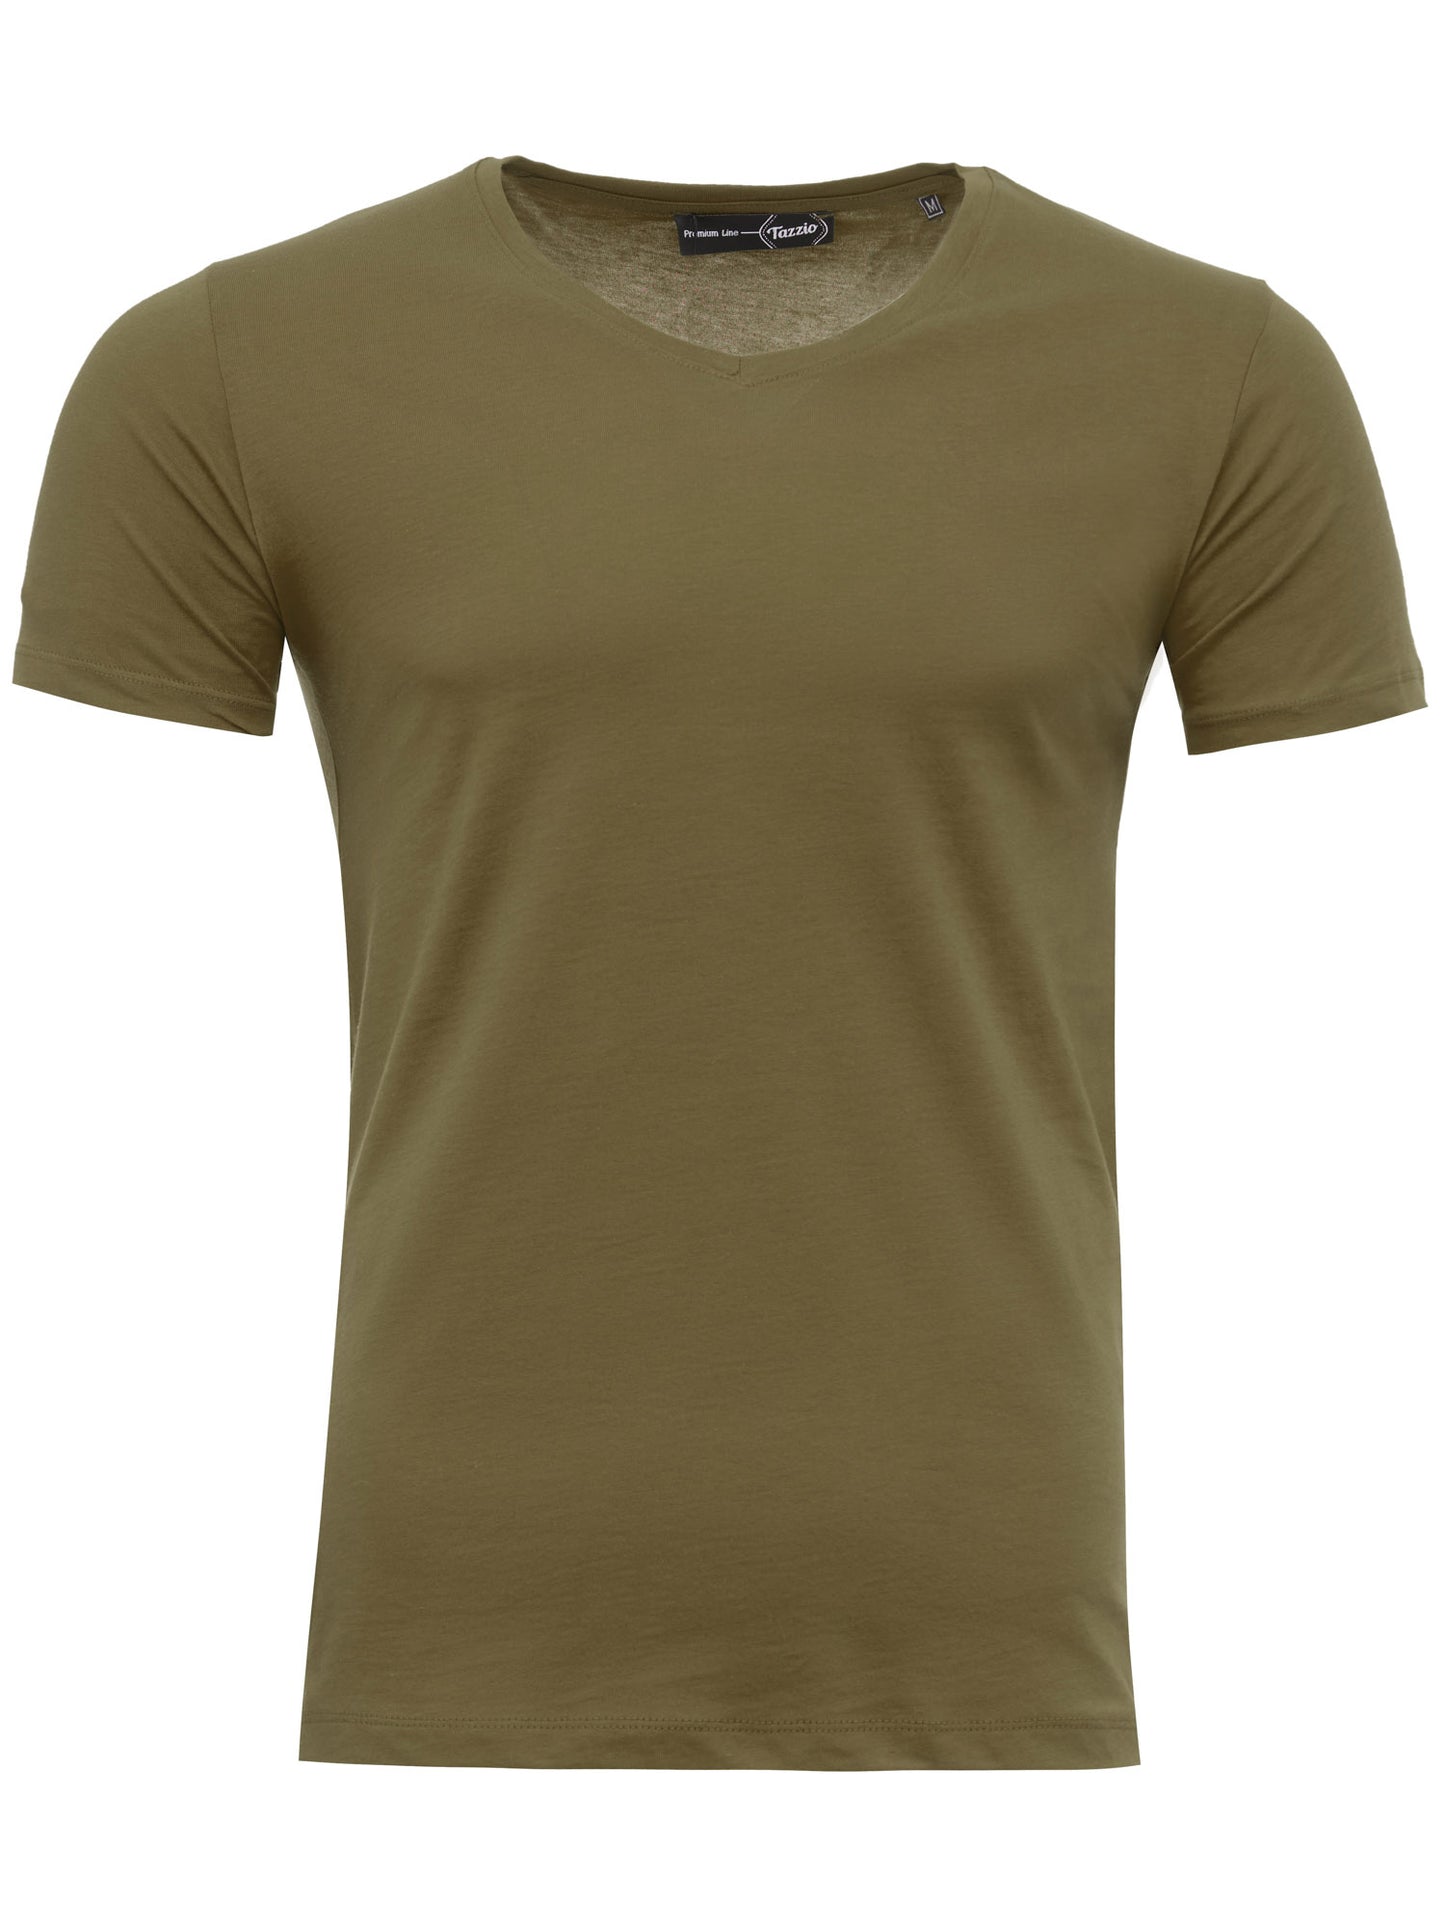 Tazzio Herren T-Shirt V-Ausschnitt 2er-Pack E101